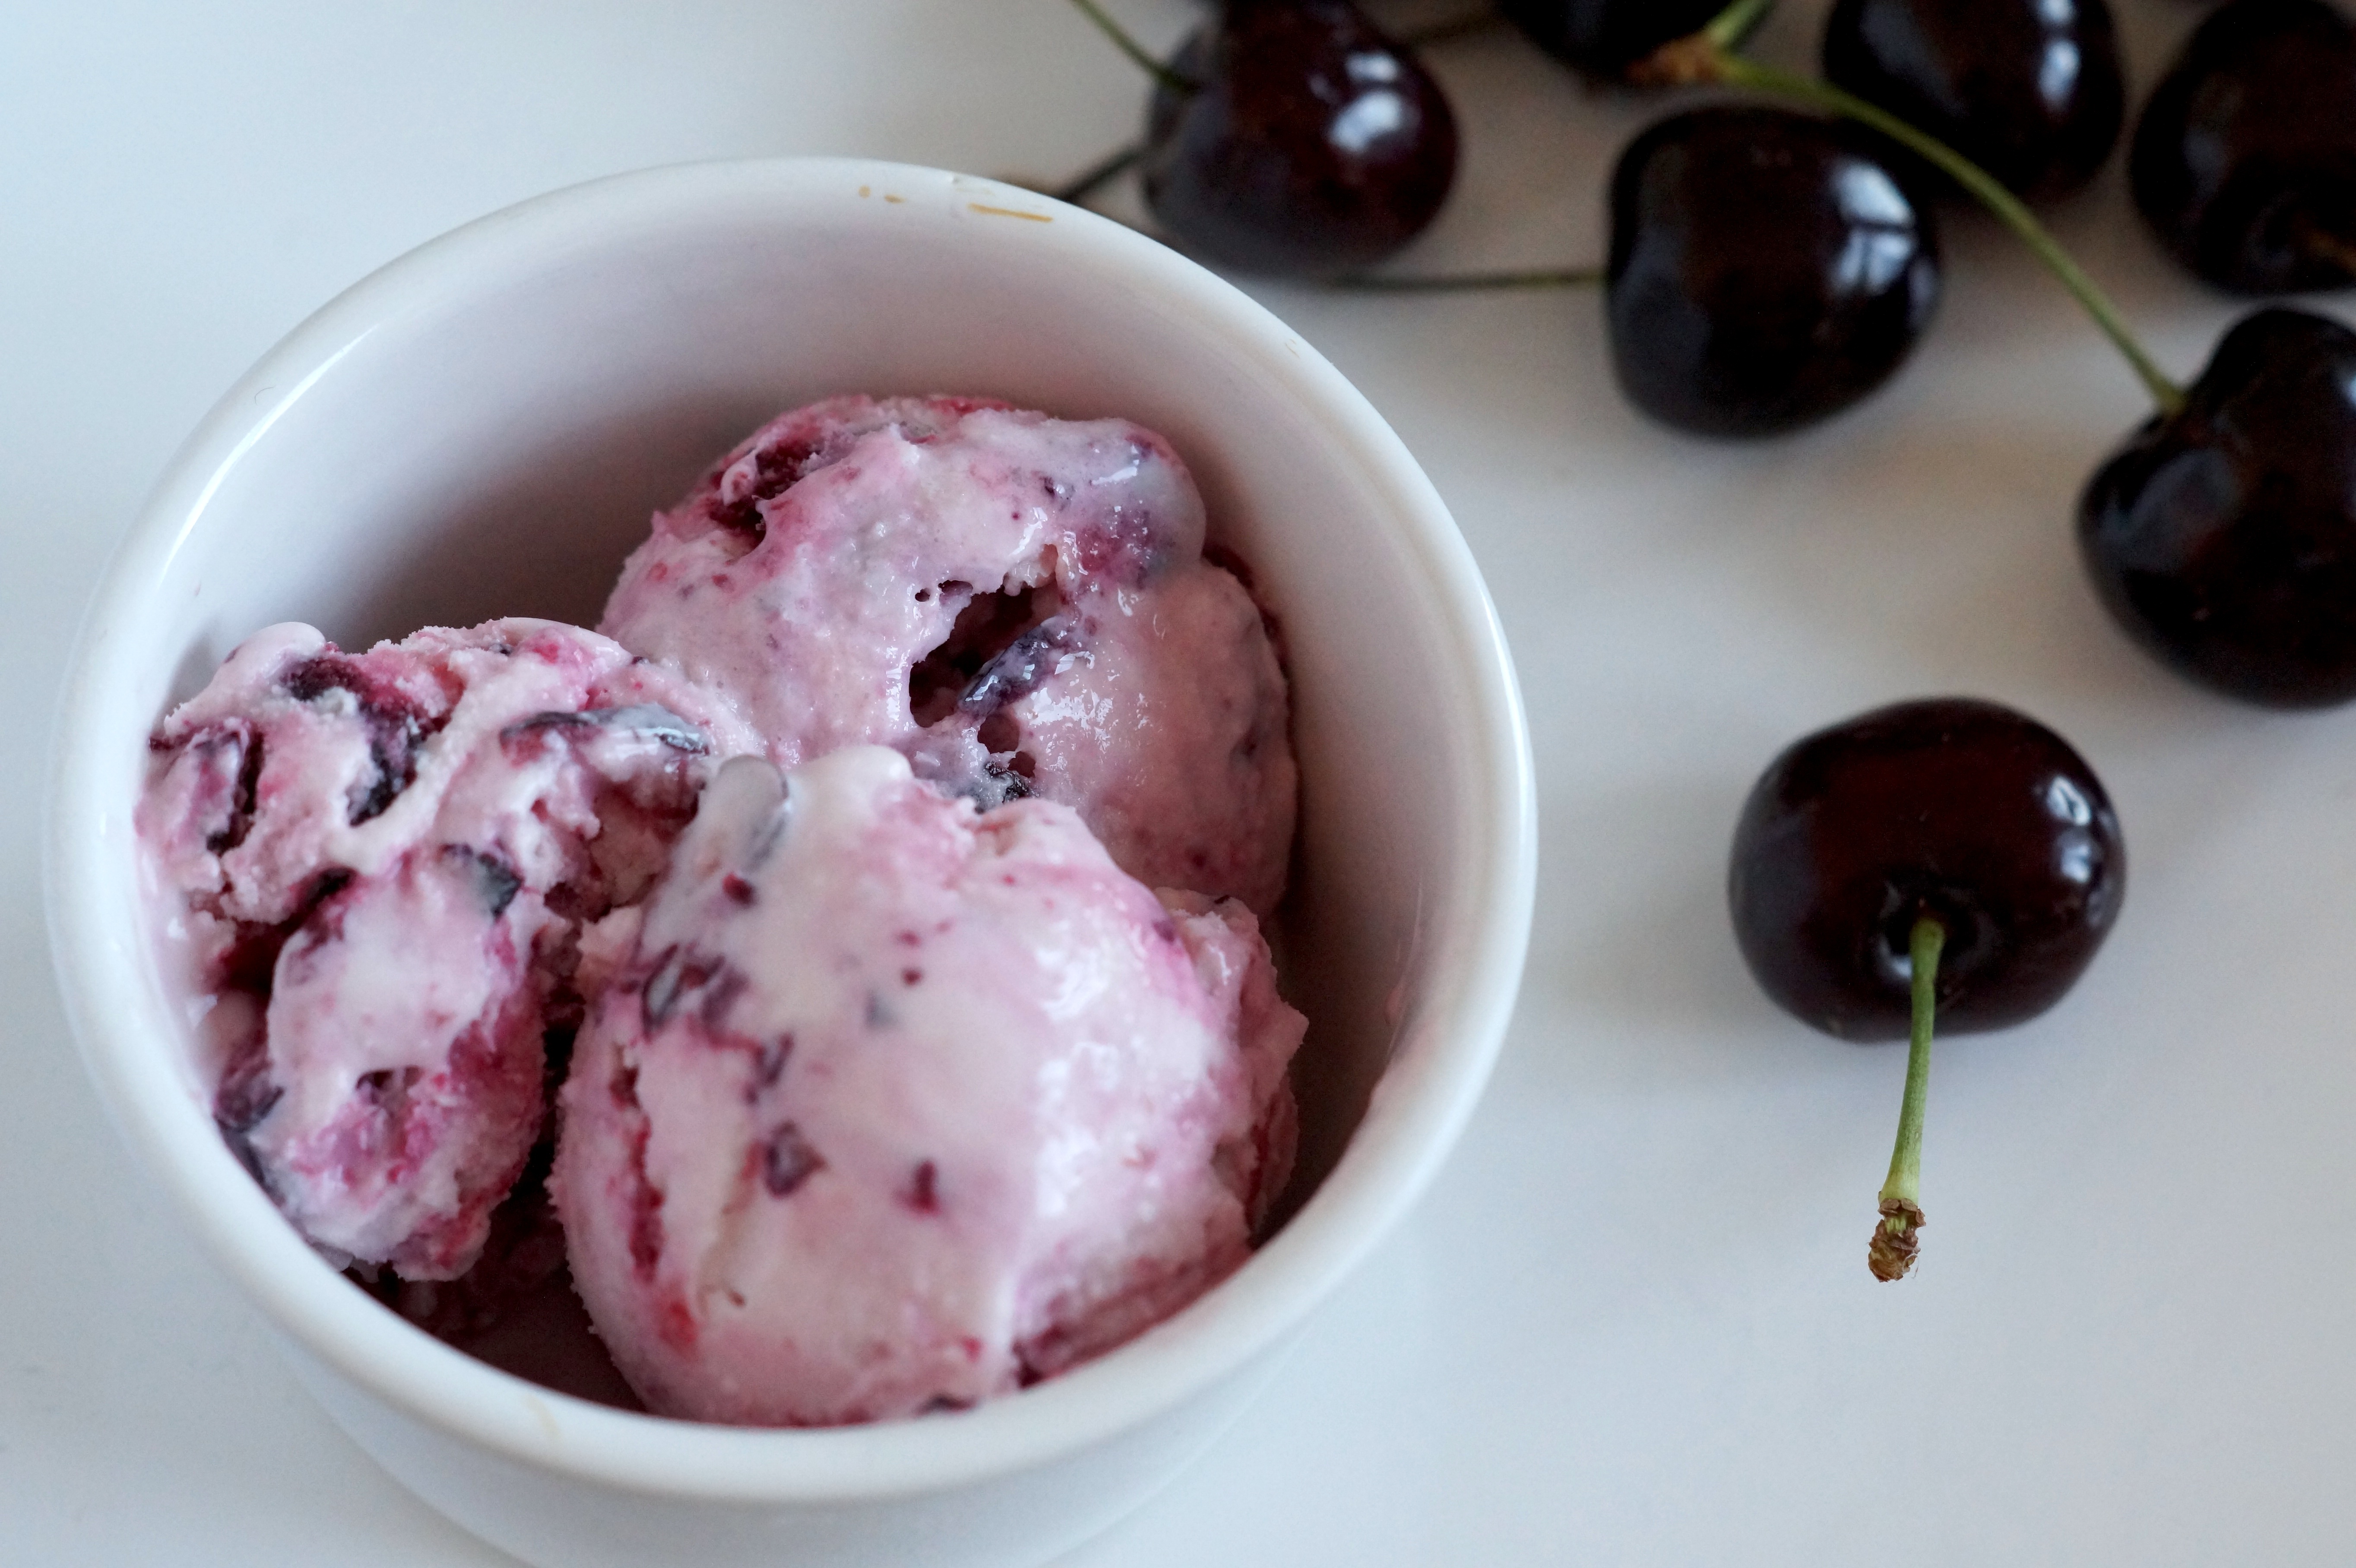 Modderig Ontspannend Avonturier Cherry Frozen Yoghurt - I am Cooking with Love